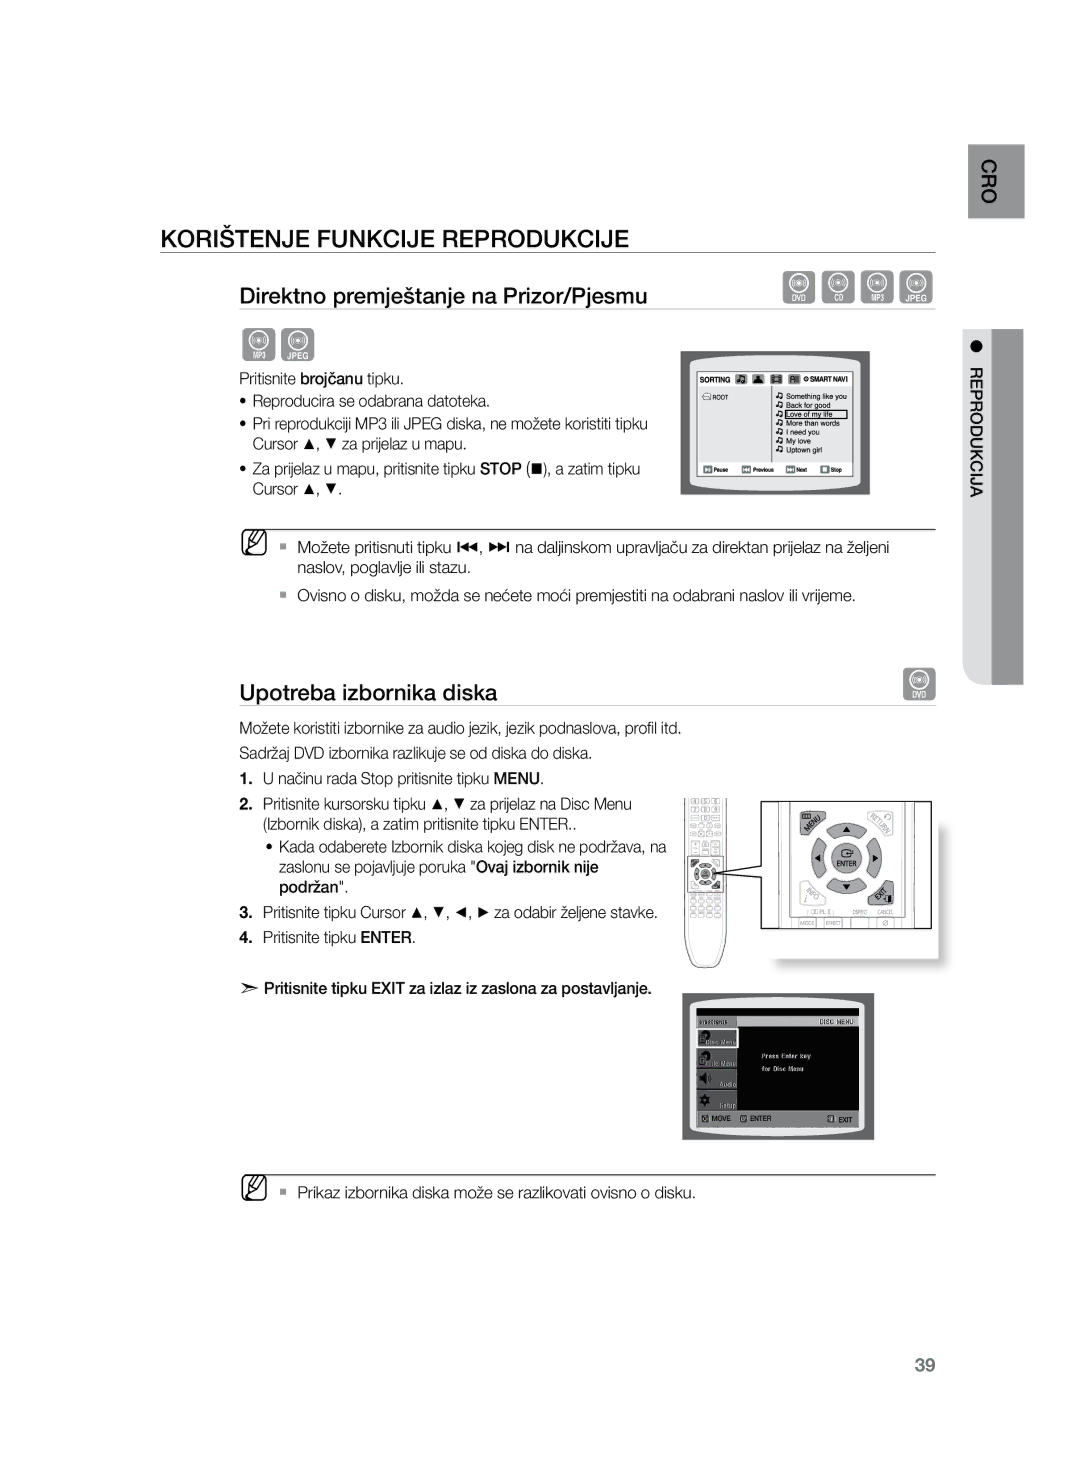 Samsung HT-Z220R/XEE, HT-TZ222R/EDC, HT-Z220R/EDC, HT-TZ225R/EDC, HT-TZ222R/XEE manual Upotreba izbornika diska 